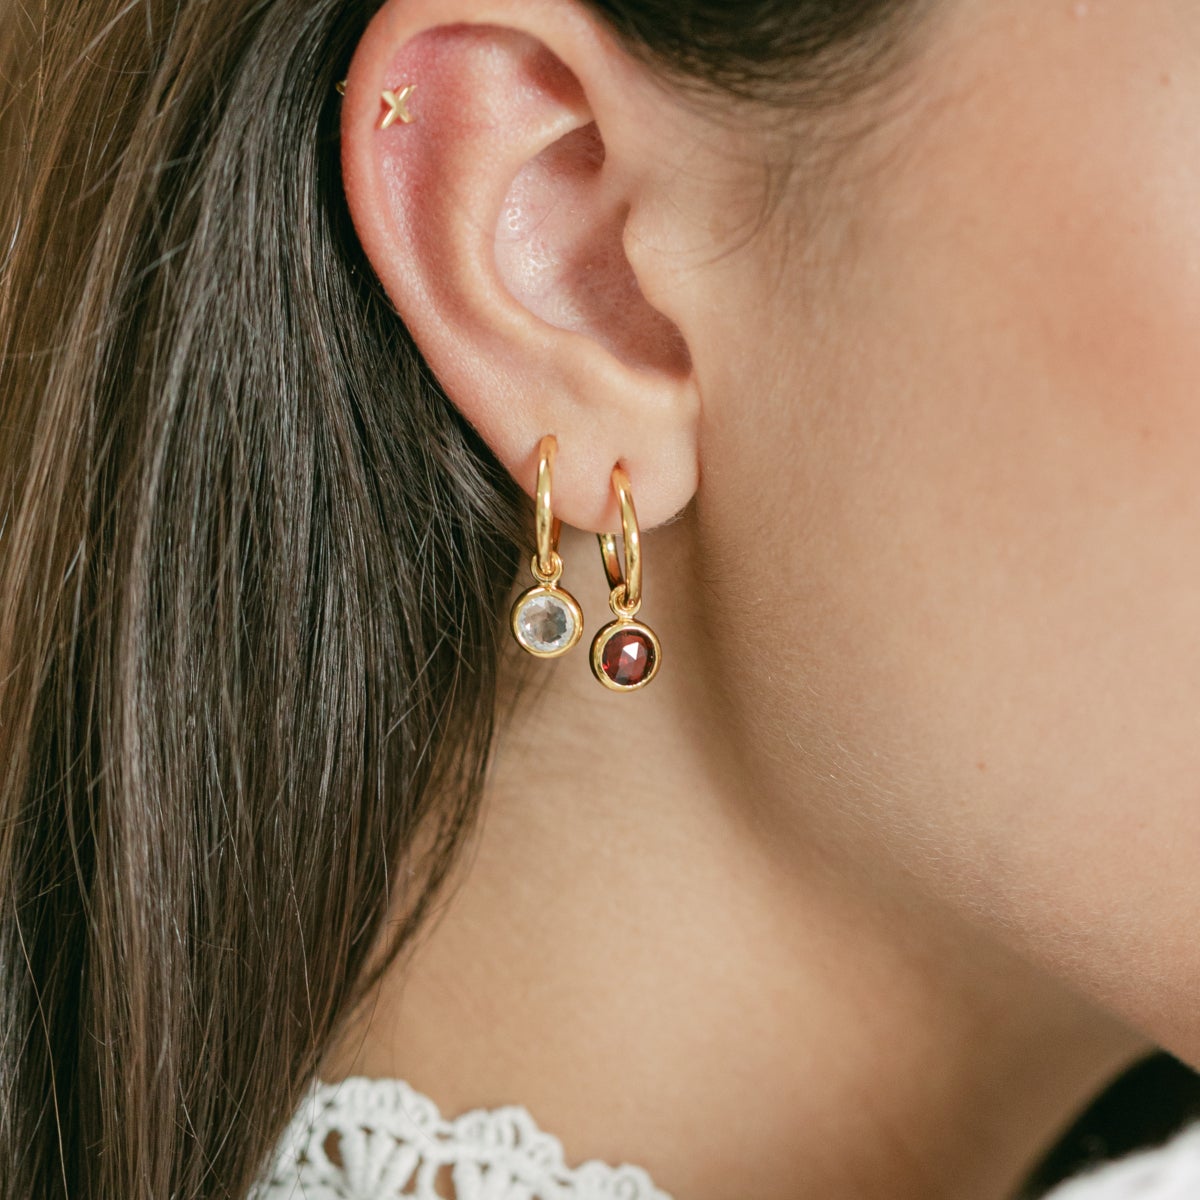 Gold Birthstone Hoop Earrings with Crystal - Lulu B Jewellery